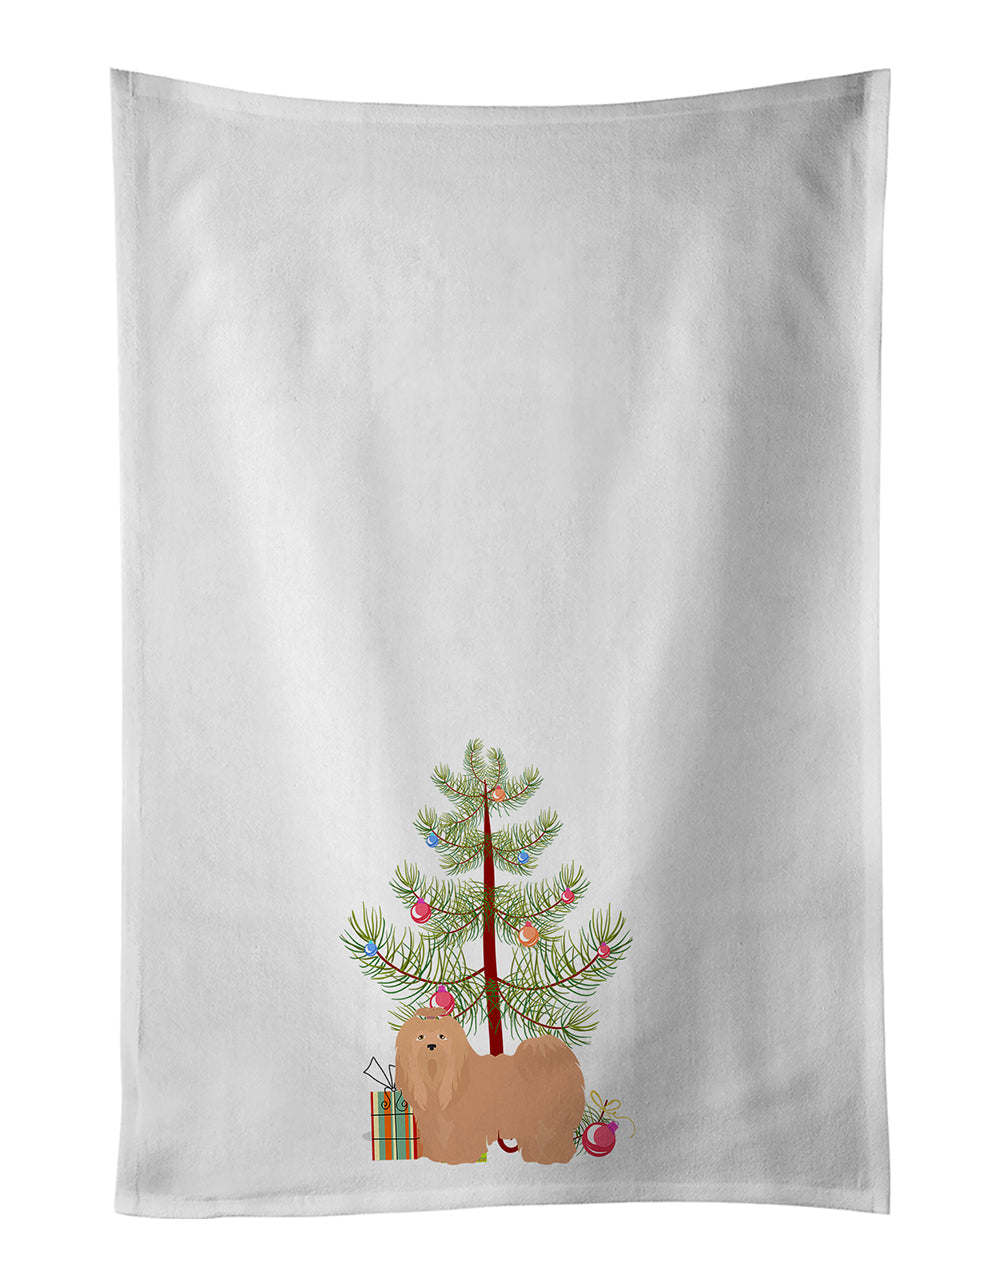 Buy this Tan Lhasa Apso Christmas Tree White Kitchen Towel Set of 2